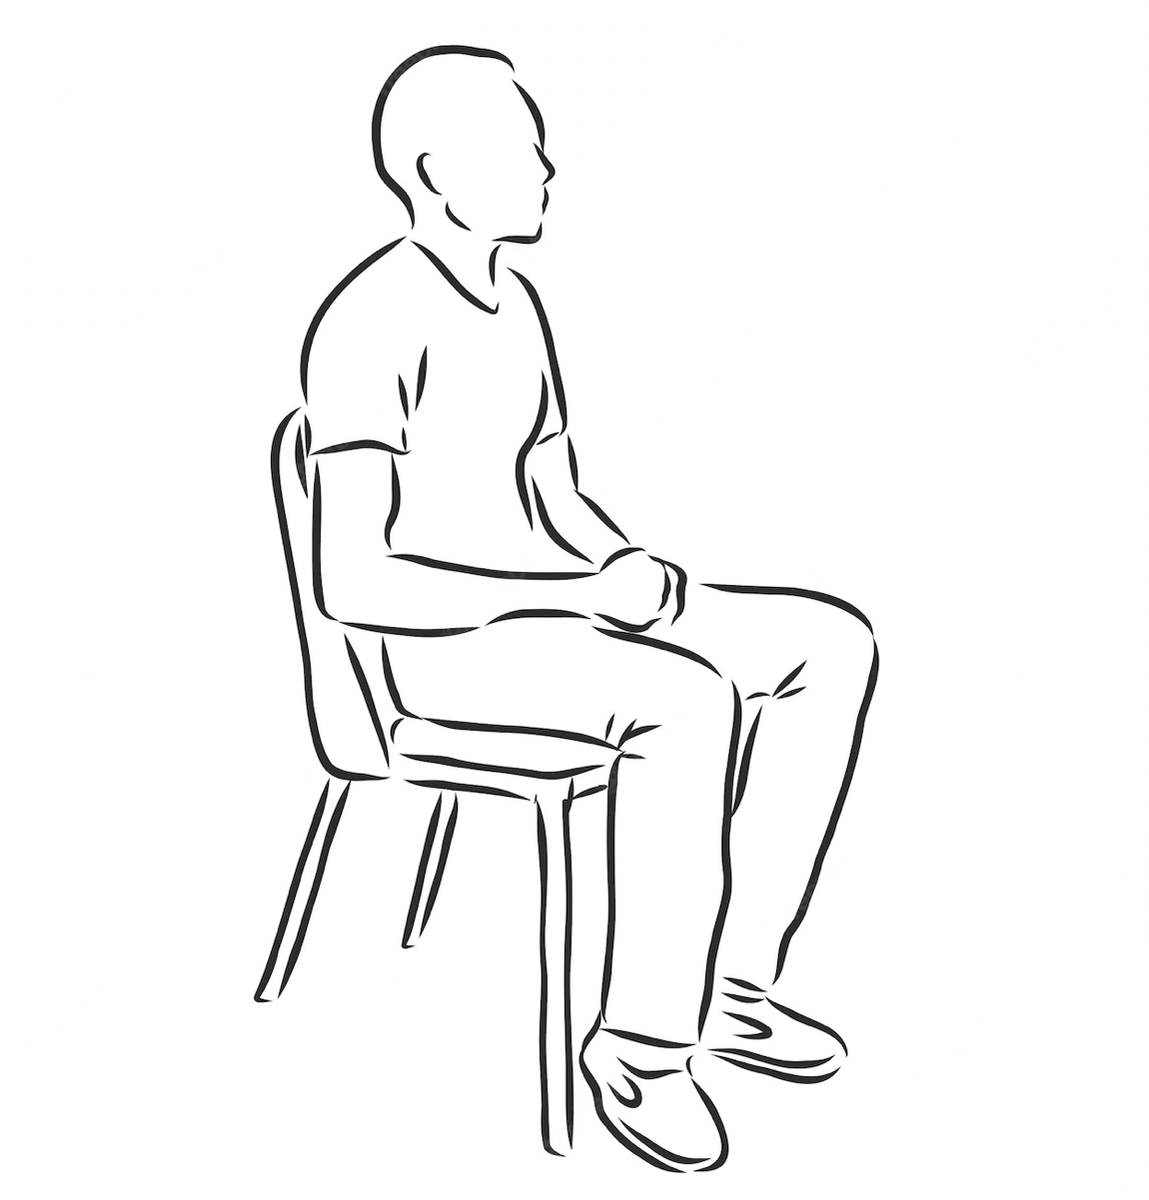 Мужчине сидя или стоя. Наброски людей сидя. Сидящий человек рисунок. Человек сидит на стуле. Человек сидит картинка.